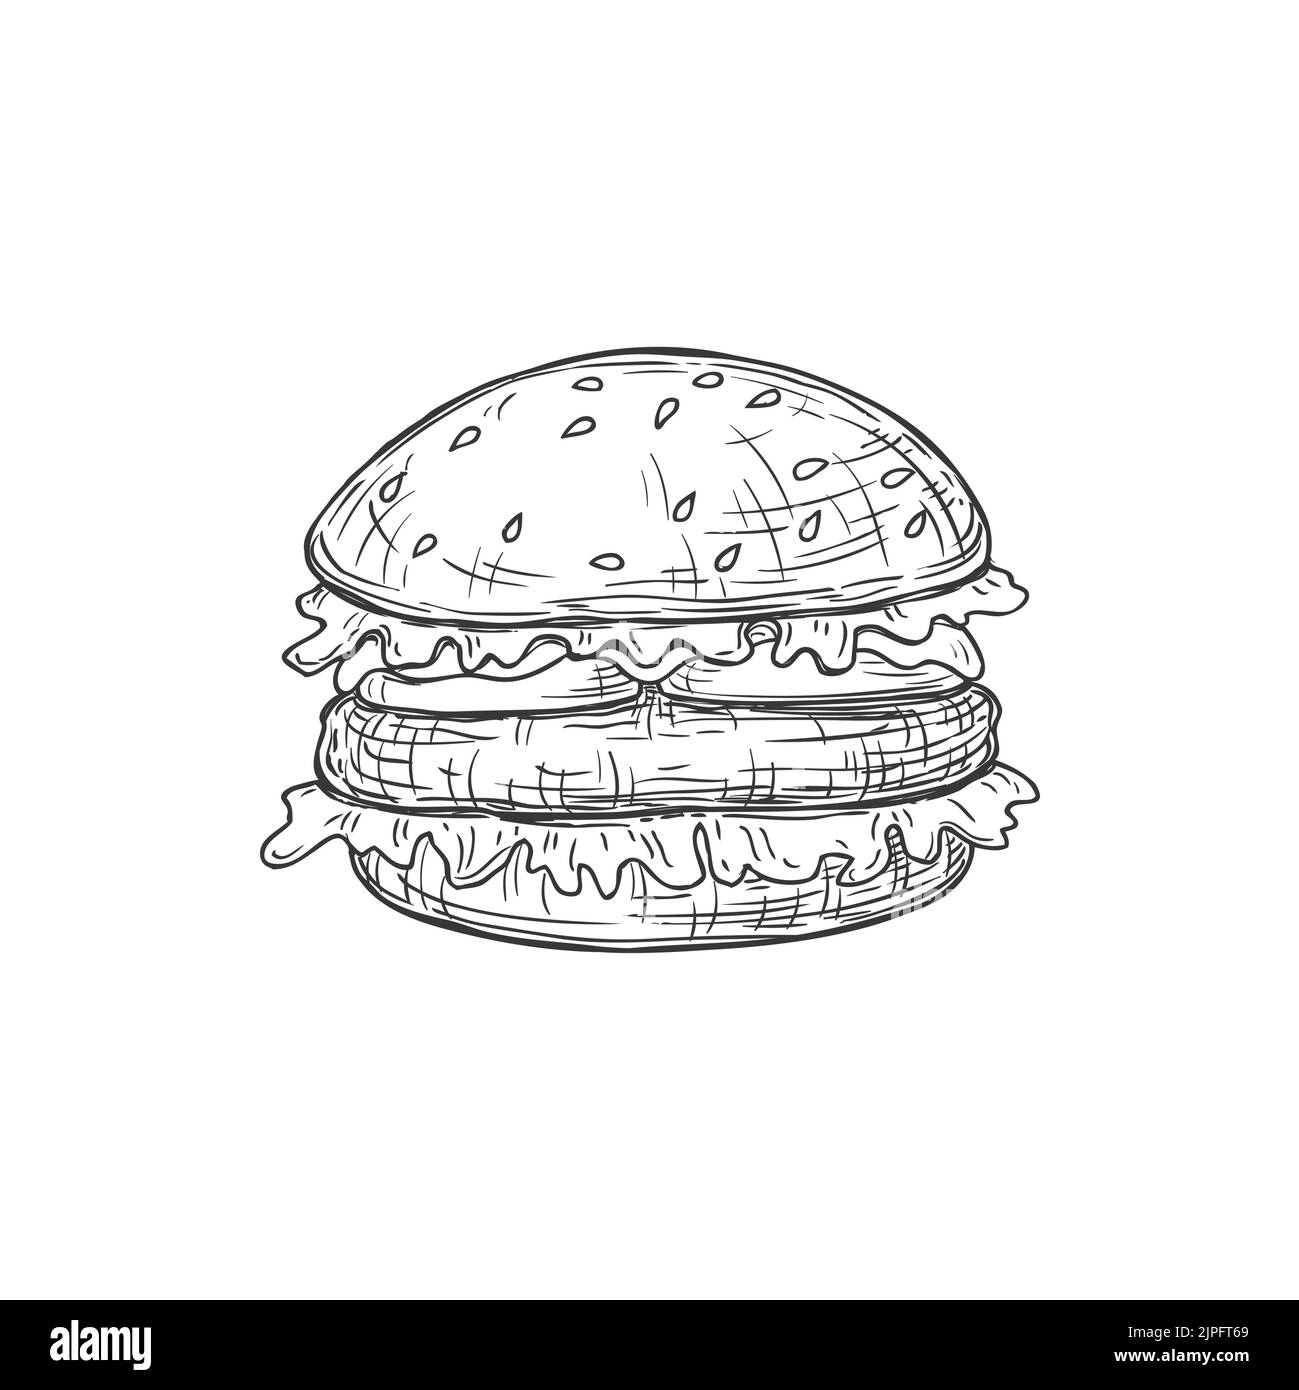 Fastfood Cheeseburger isoliert Essen zum Mitnehmen monochrome Skizze Symbol. Vector Fastfood Imbiss zum Mitnehmen, Street Food Burger mit Fleisch. Hamburger mit Sesambrötchen, Käse und Rinderfleisch, Salatblättern. Stock Vektor